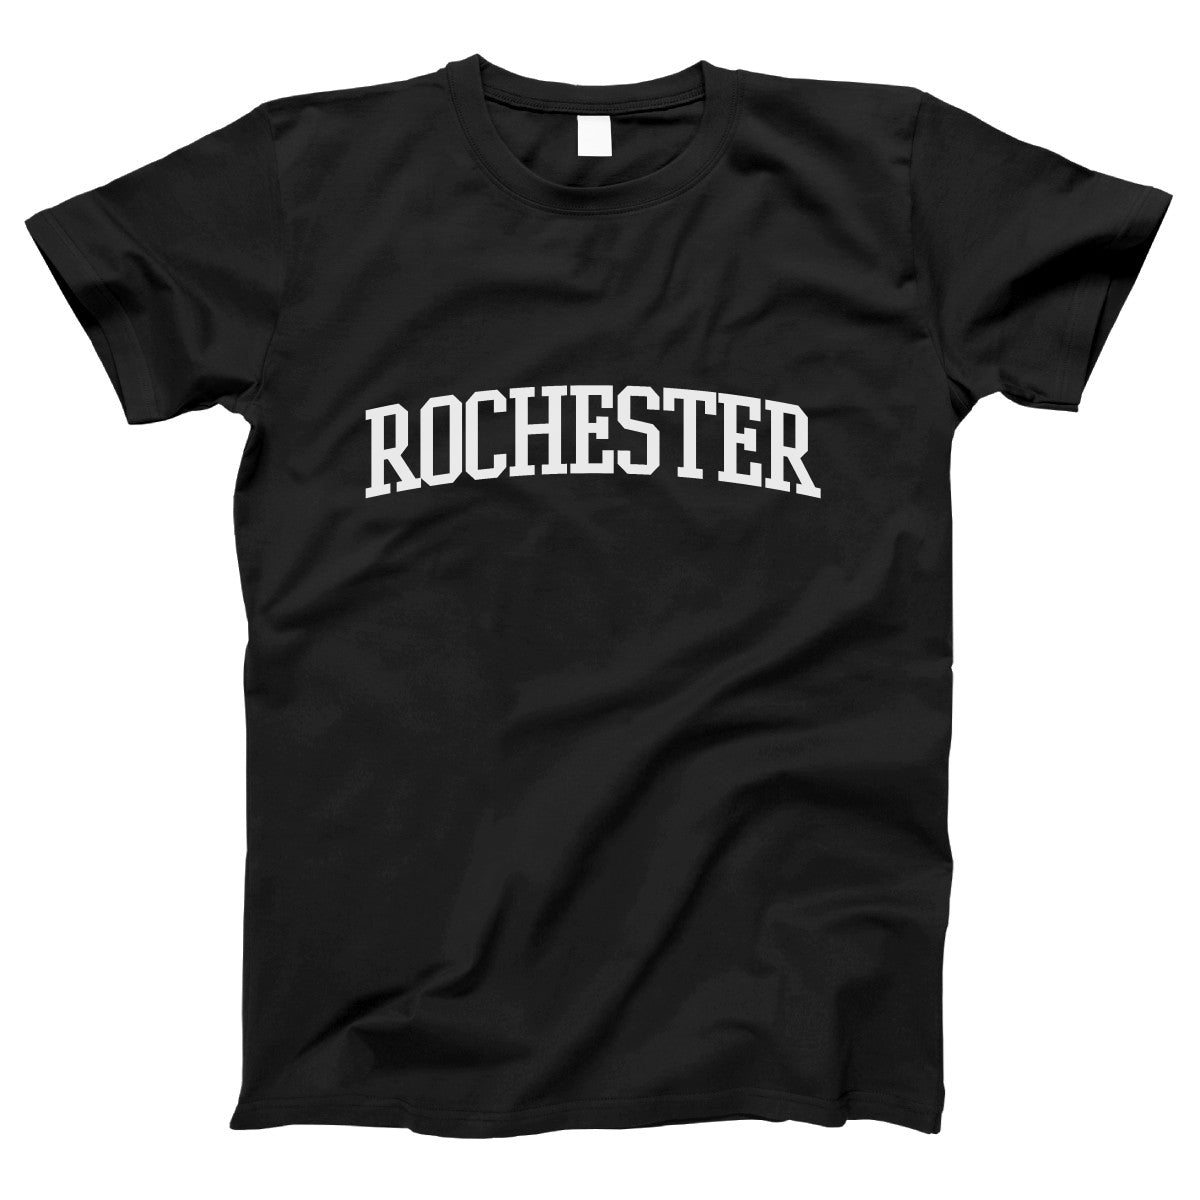 Rochester Women's T-shirt